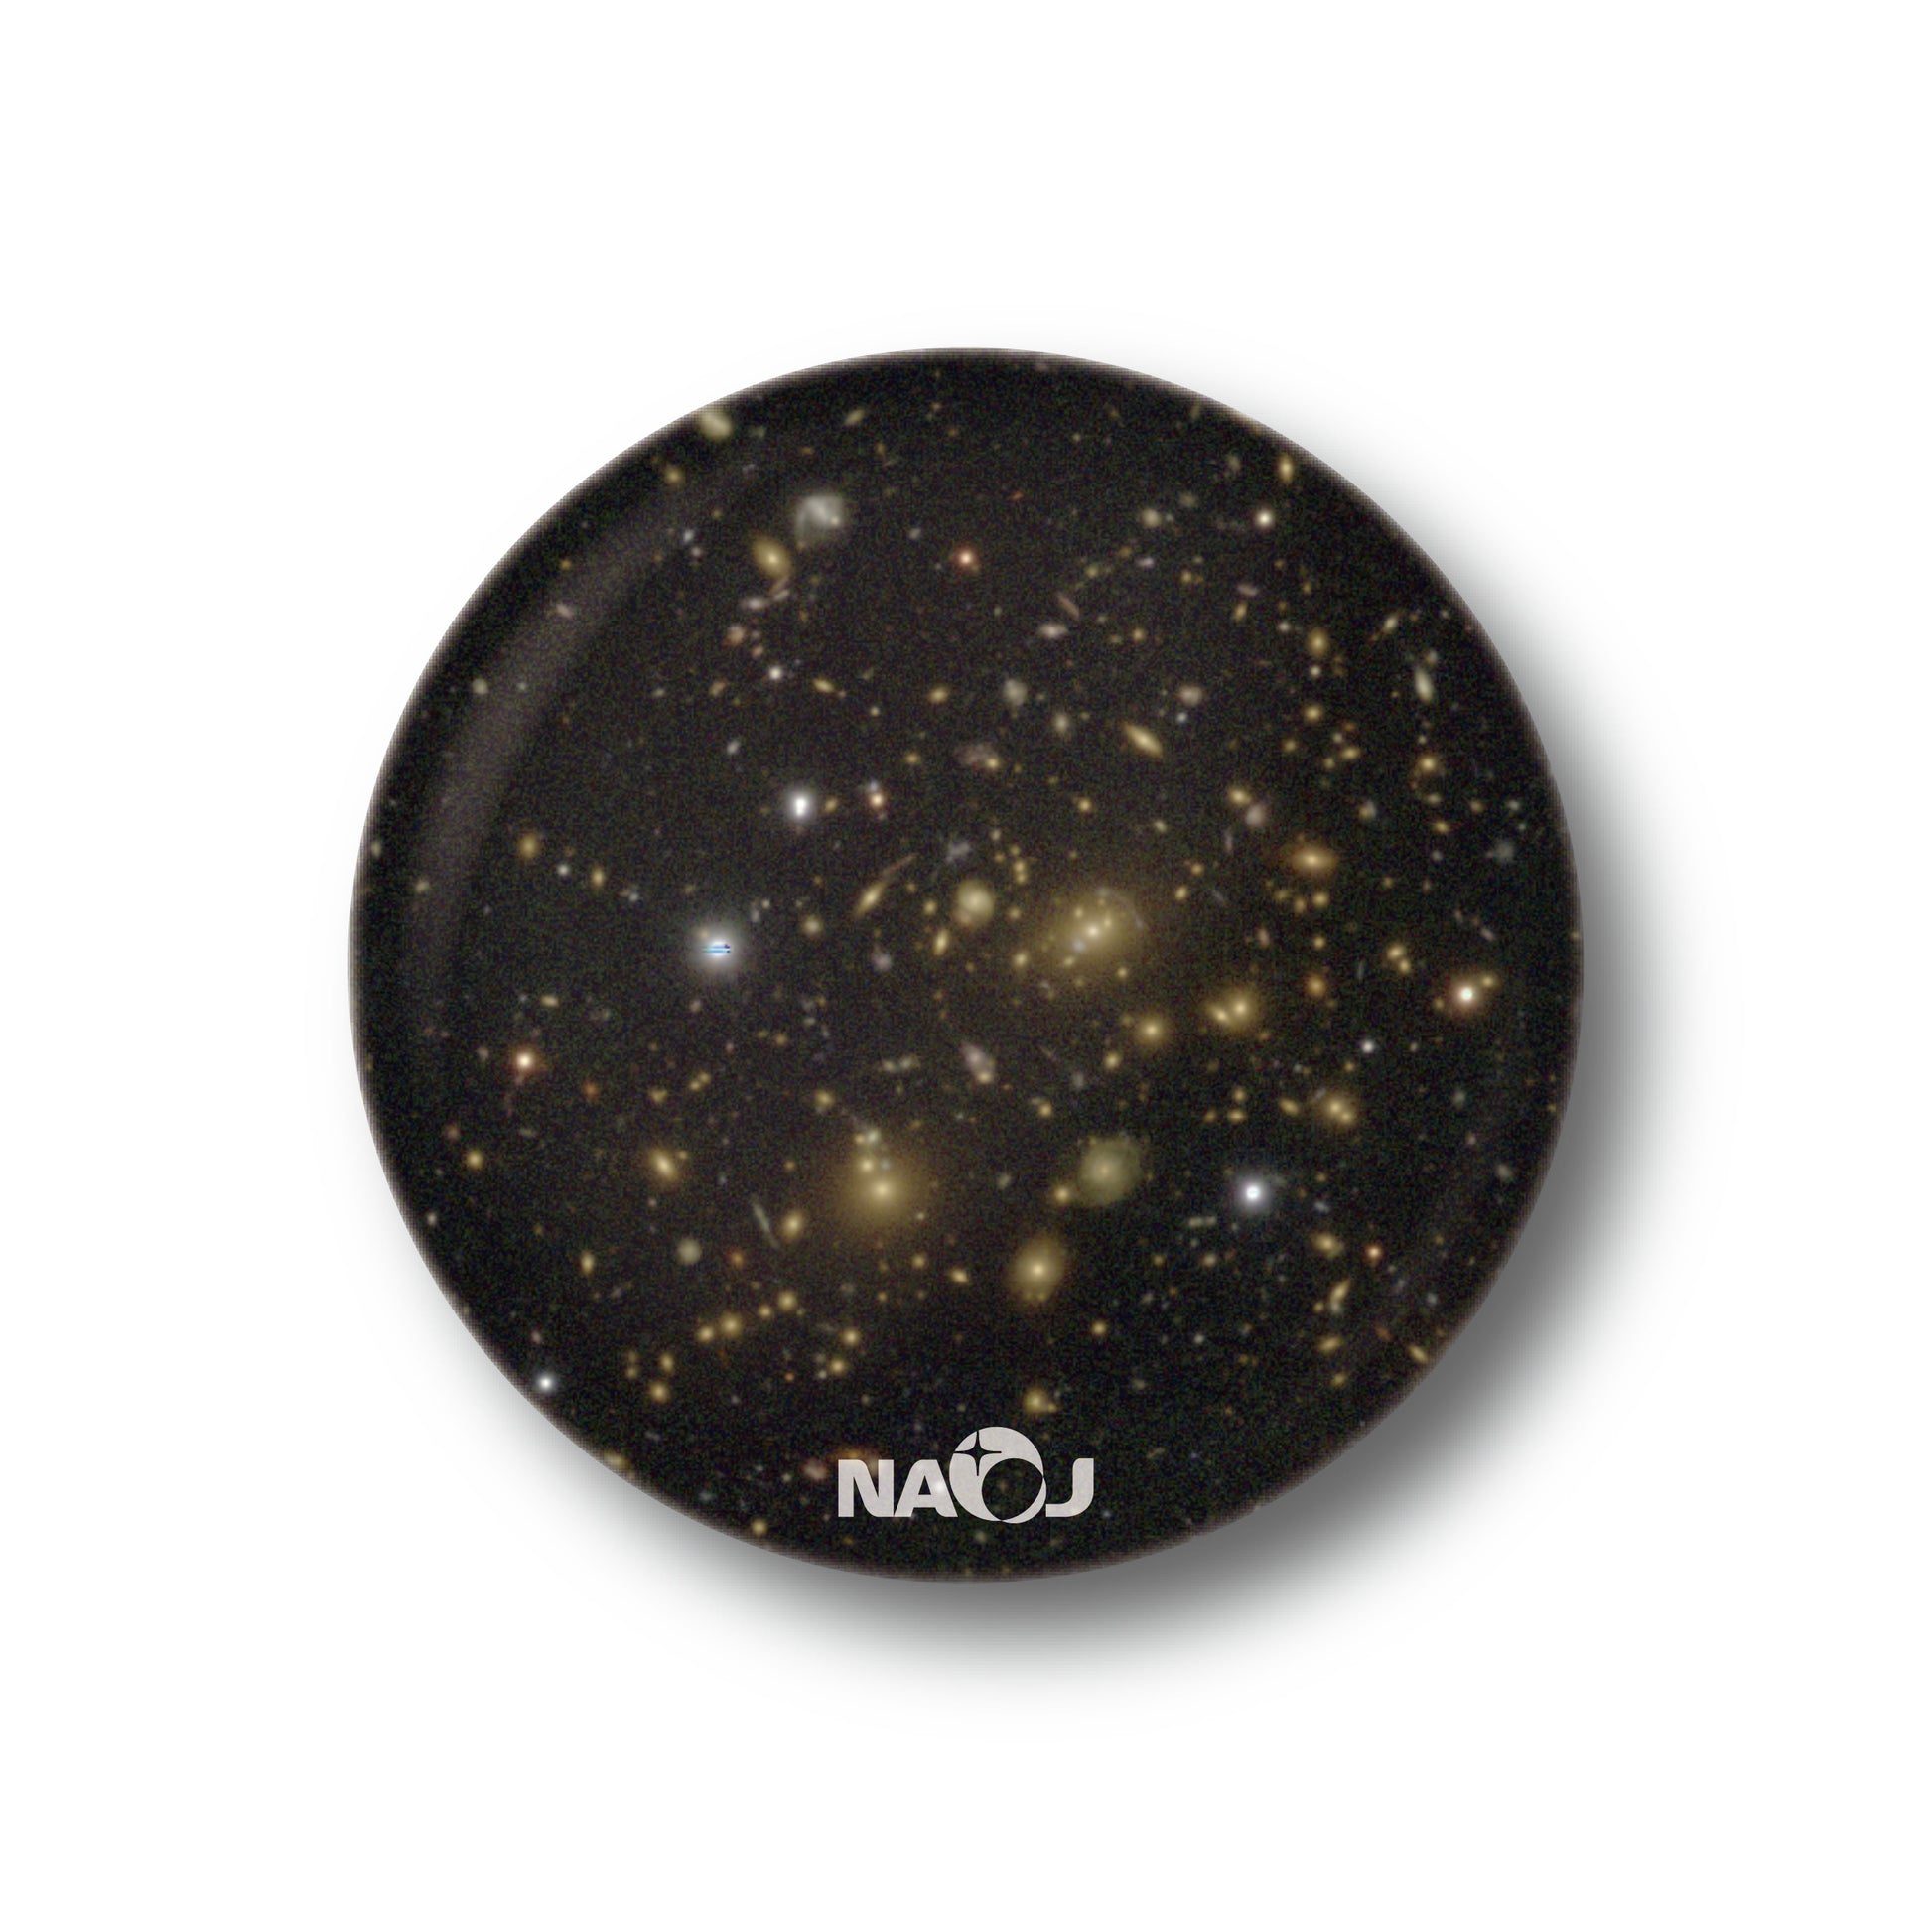 国立天文台  すばる望遠鏡HSCで見る宇宙  マグネット [小] 重力レンズ SDSSJ115214.19+003126.5 01